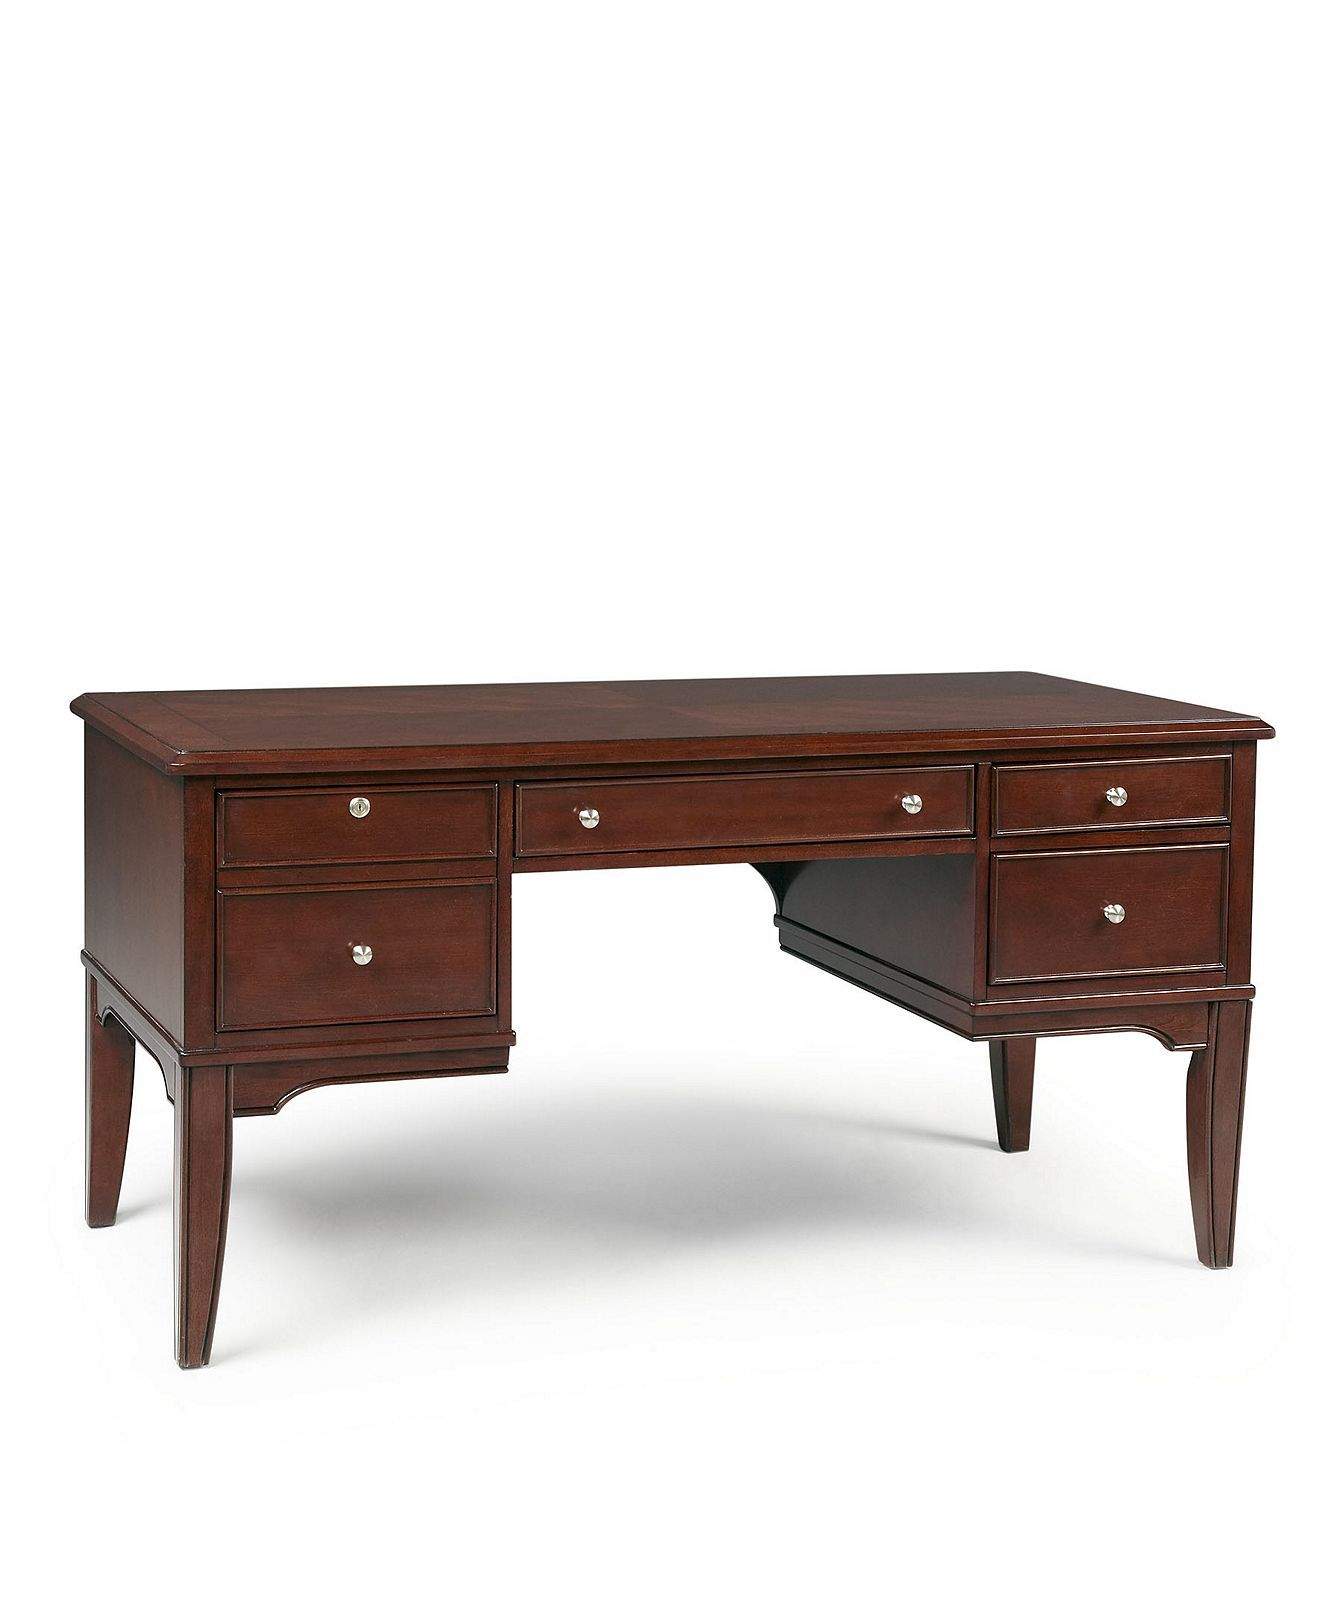 Grandview Desk - Home Office Furniture - Furniture - Macy'S regarding Macy'S Office Furniture